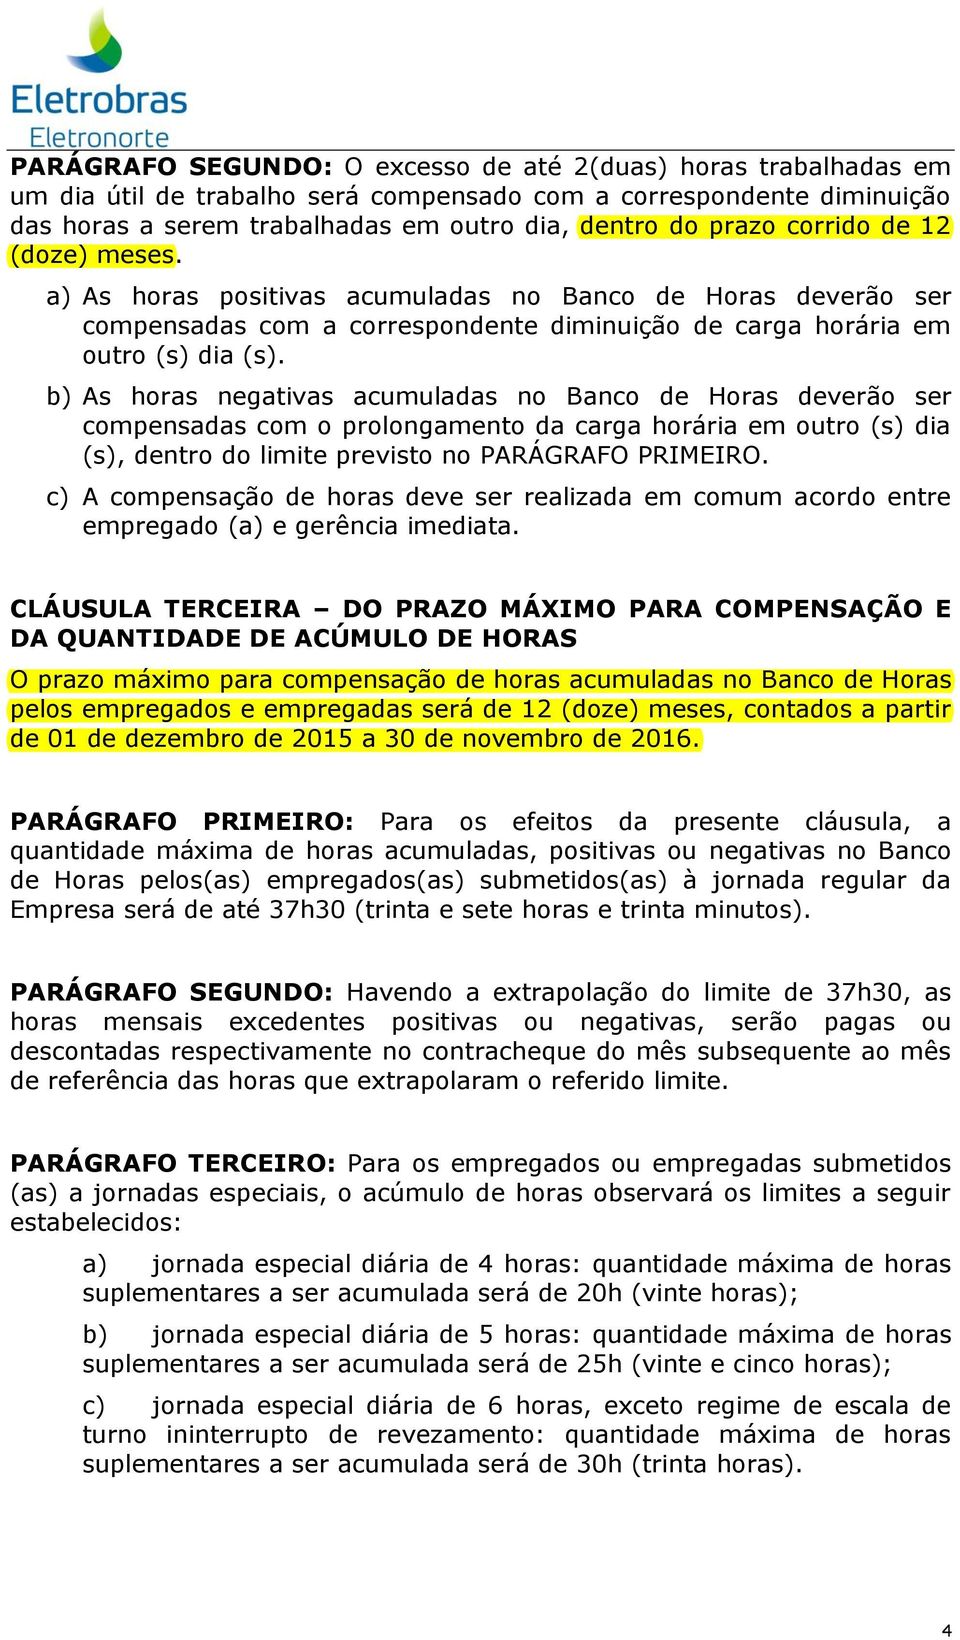 b) As horas negativas acumuladas no Banco de Horas deverão ser compensadas com o prolongamento da carga horária em outro (s) dia (s), dentro do limite previsto no PARÁGRAFO PRIMEIRO.